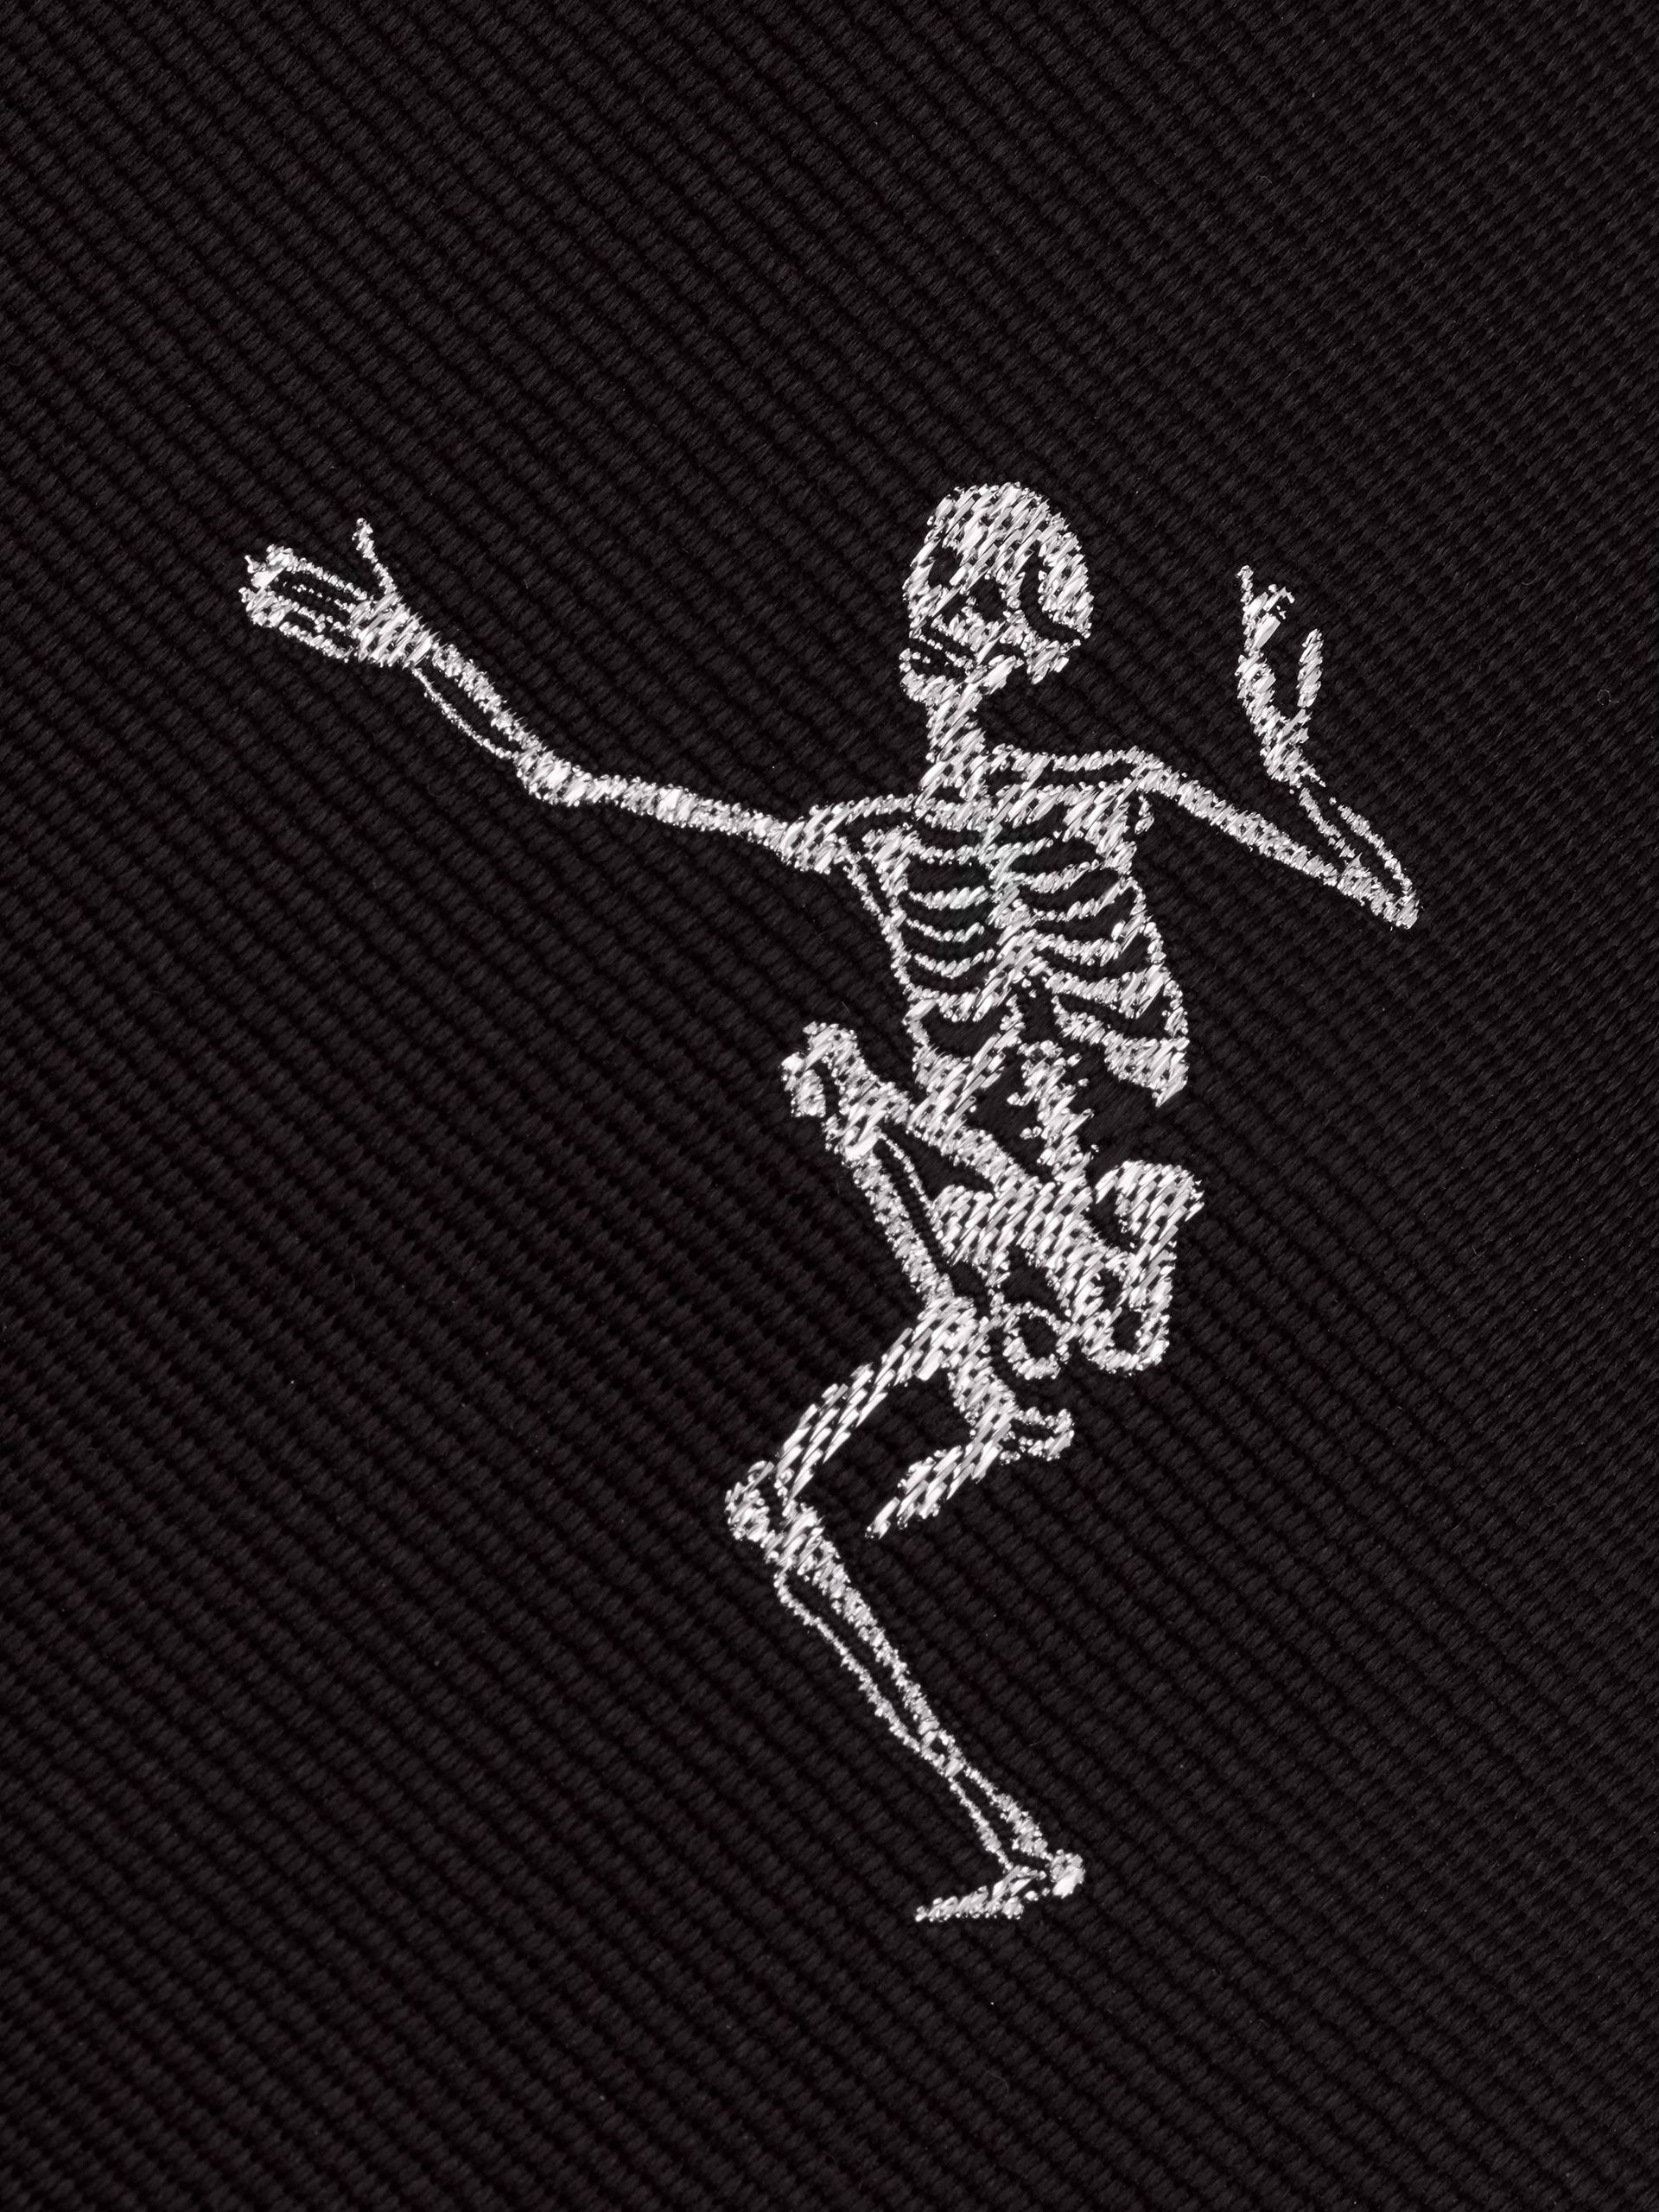 Танцующий скелет